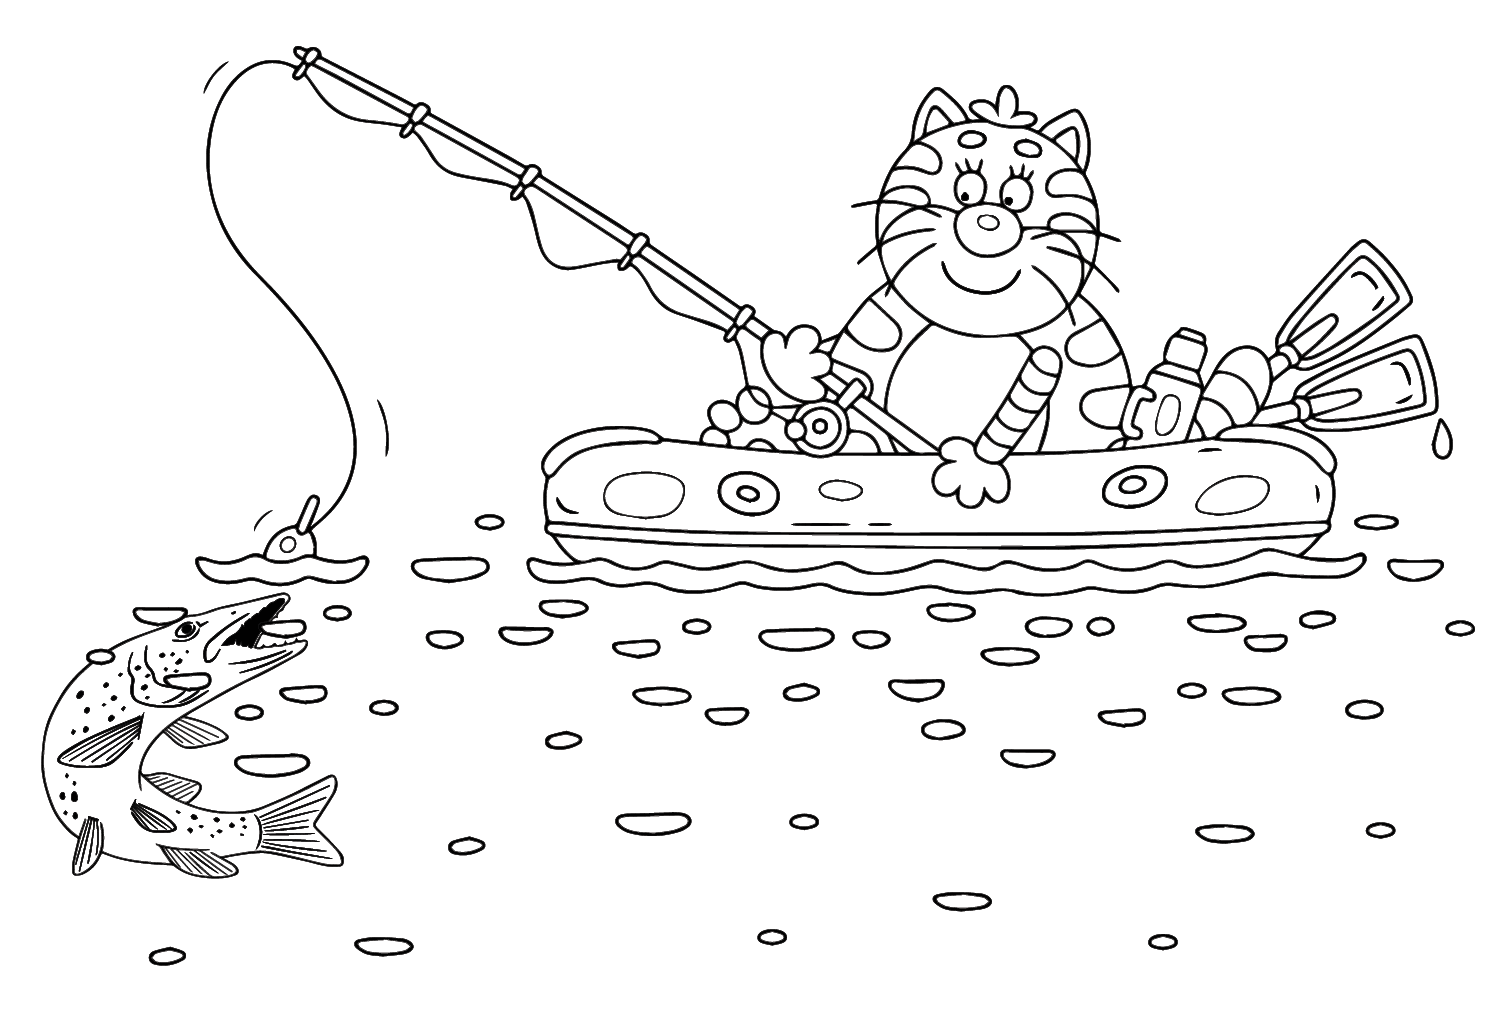 Pescando Lúcio de Gato from Pike